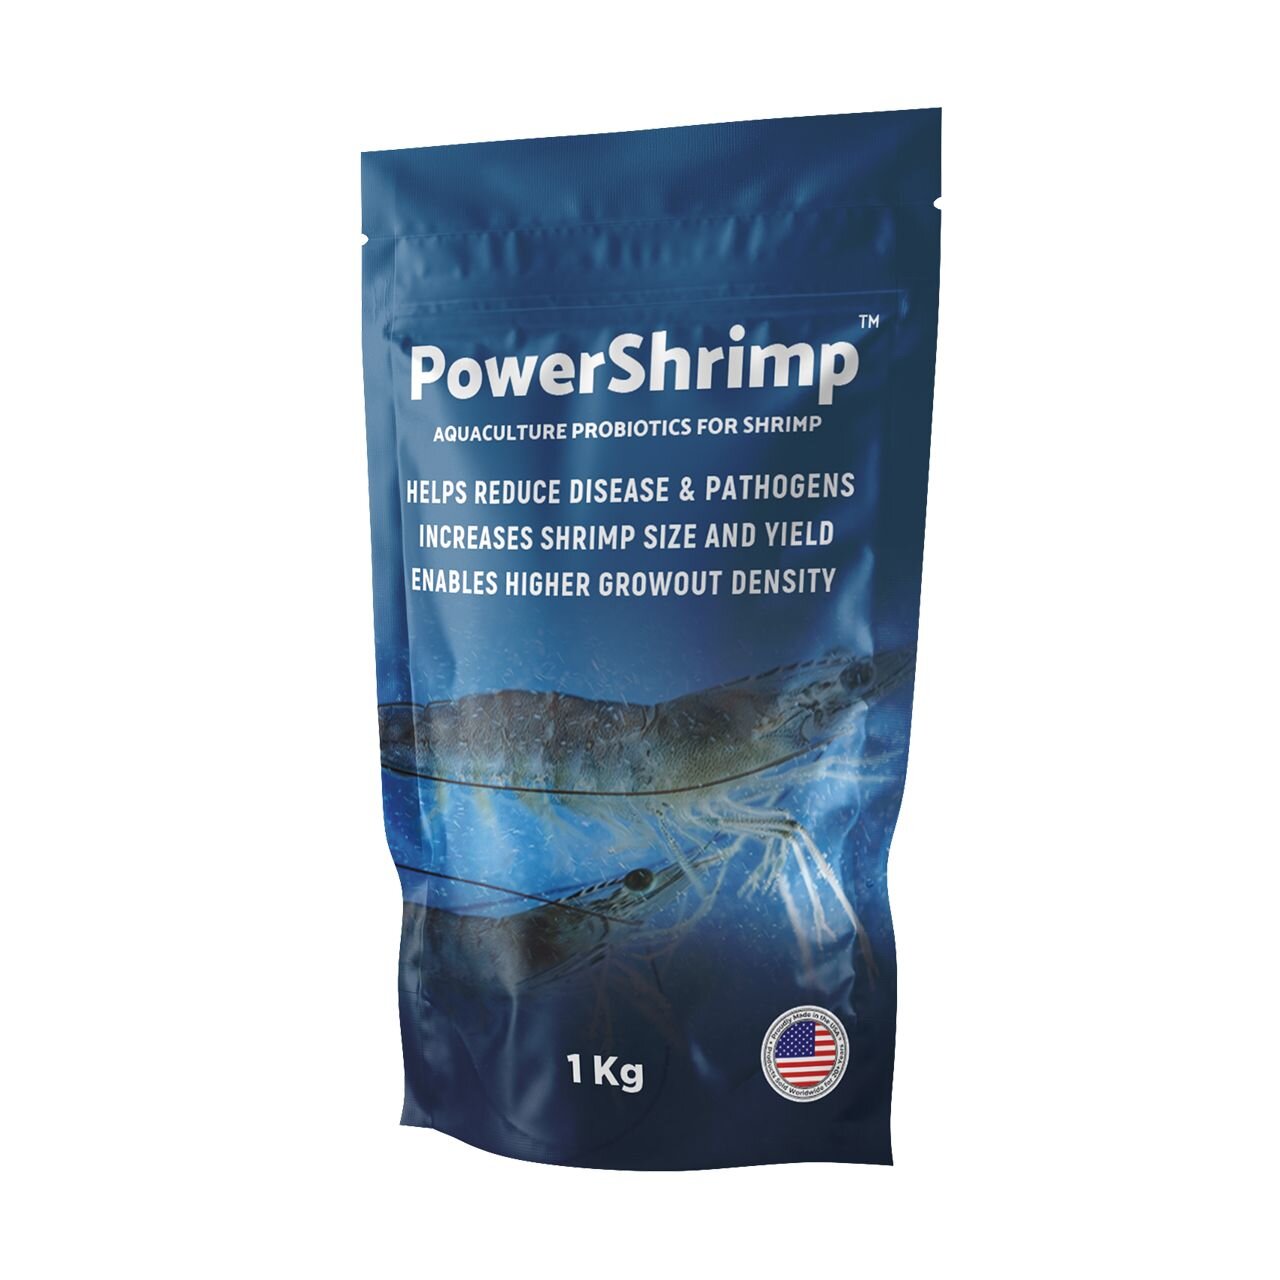 PowerShrimp™ - Aquaculture probiotics for shrimp